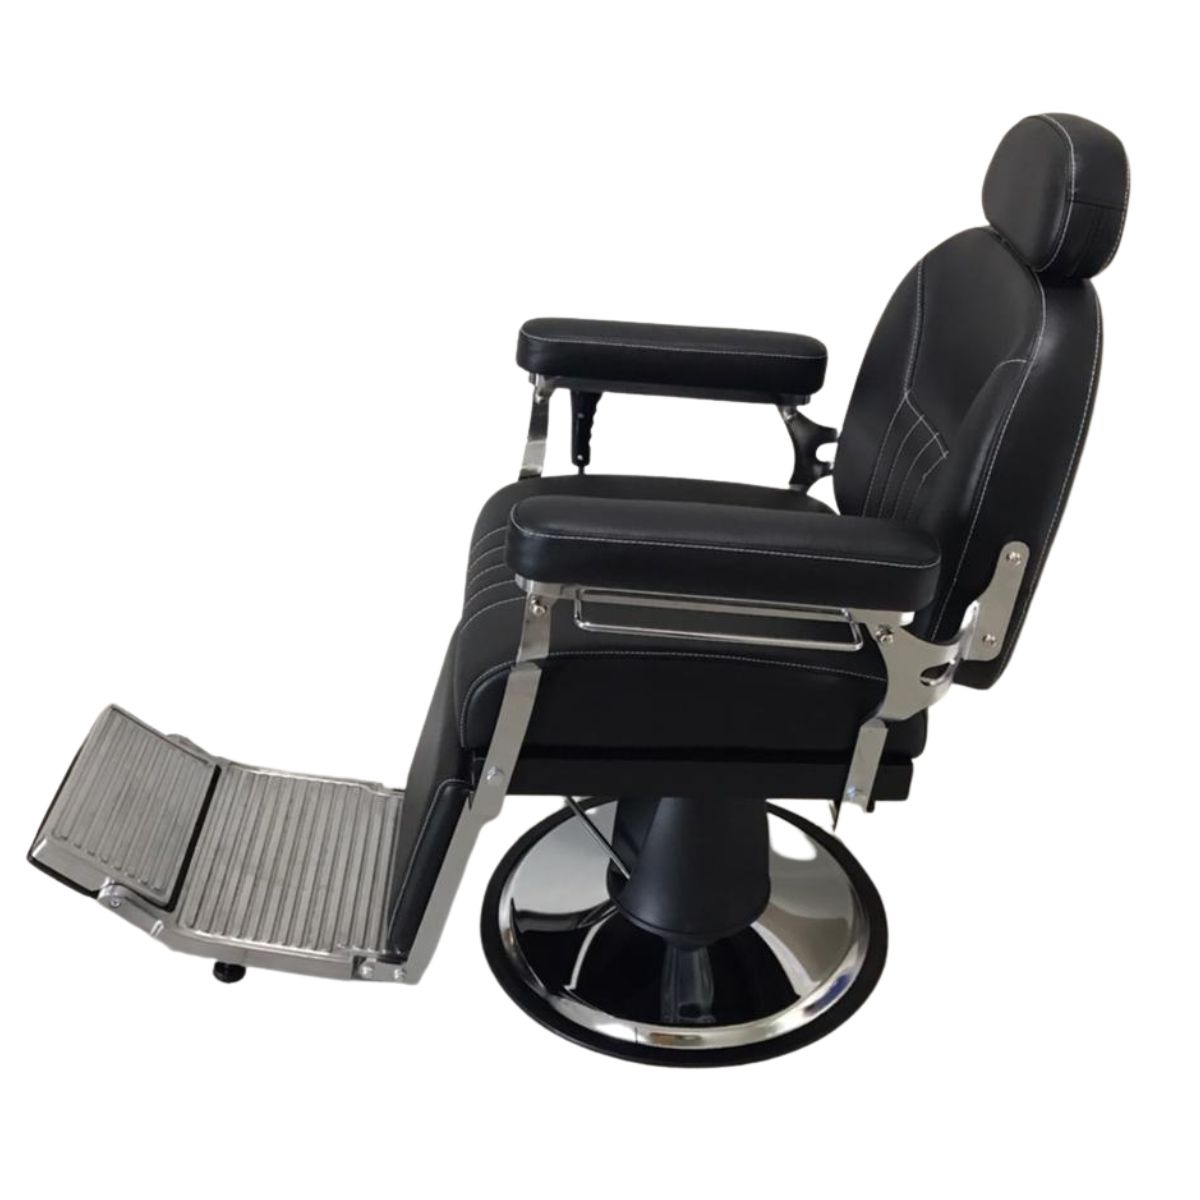 Cadeira Reclinavel Barbeiro com Preços Incríveis no Shoptime